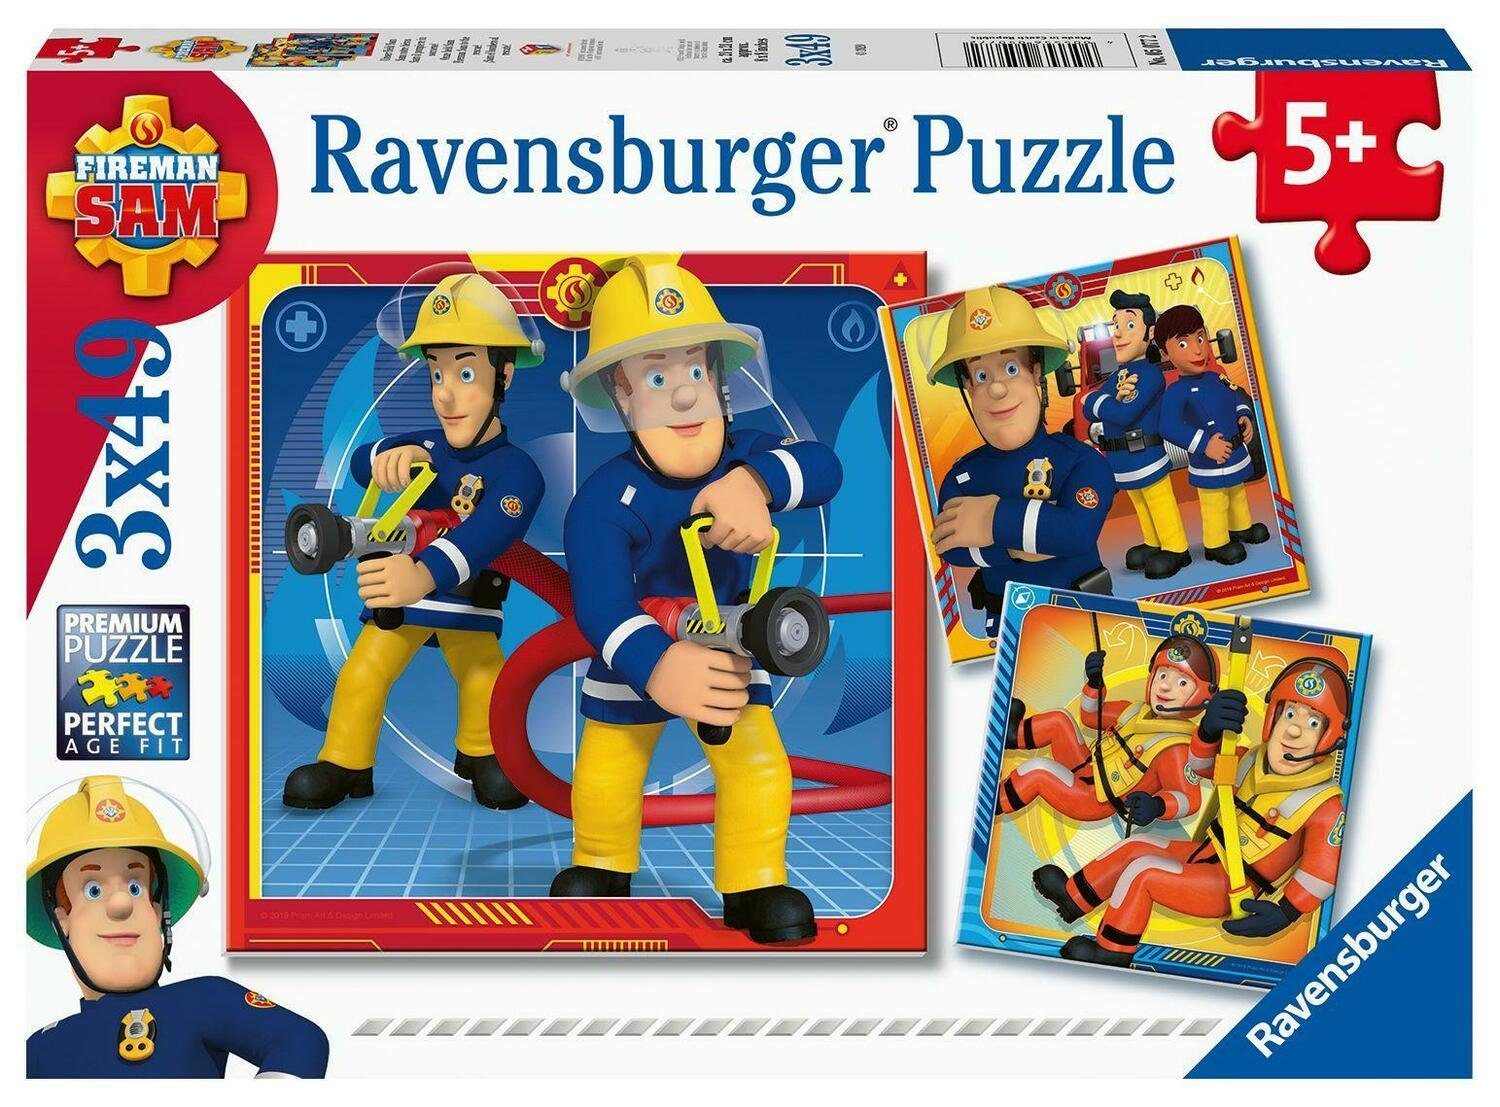 Ravensburger Puzzle Ravensburger Kinderpuzzle Held Puzzle Unser - Sam 49 Puzzleteile 05077 für..., 